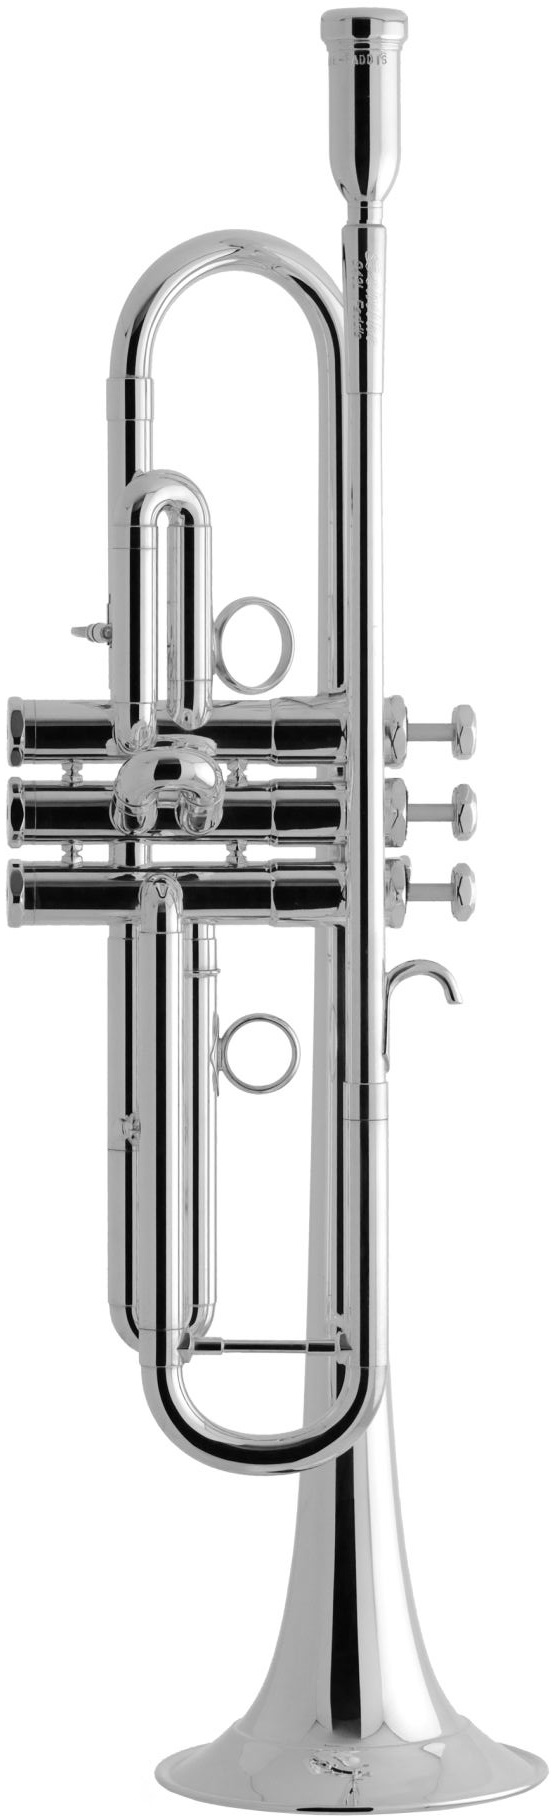 Schilke - S43HDL - F - up-grade - Blechblasinstrumente - Trompeten mit Perinet-Ventilen | MUSIK BERTRAM Deutschland Freiburg